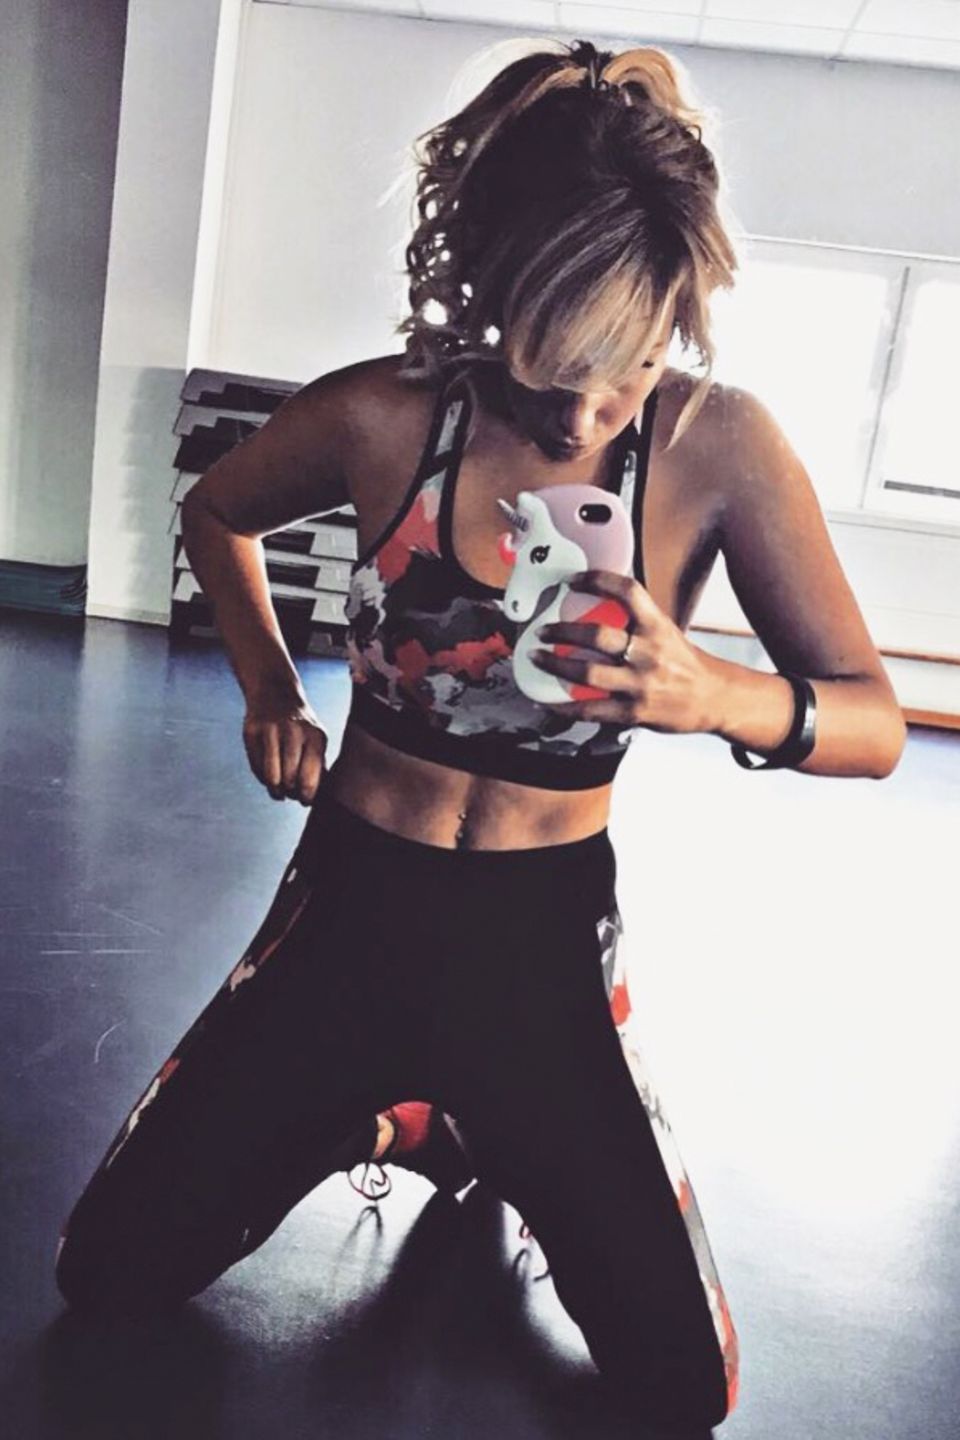 "Dein Körper ist ein Spiegelbild deines Lebensstils", schreibt Schlagersängerin Annemarie Eilfeld zu diesem Selfie auf Instagram. Ihr Lebensstil scheint sportlich zu sein, zumindest erweckt ihr durchtrainierter Body den Eindruck. 